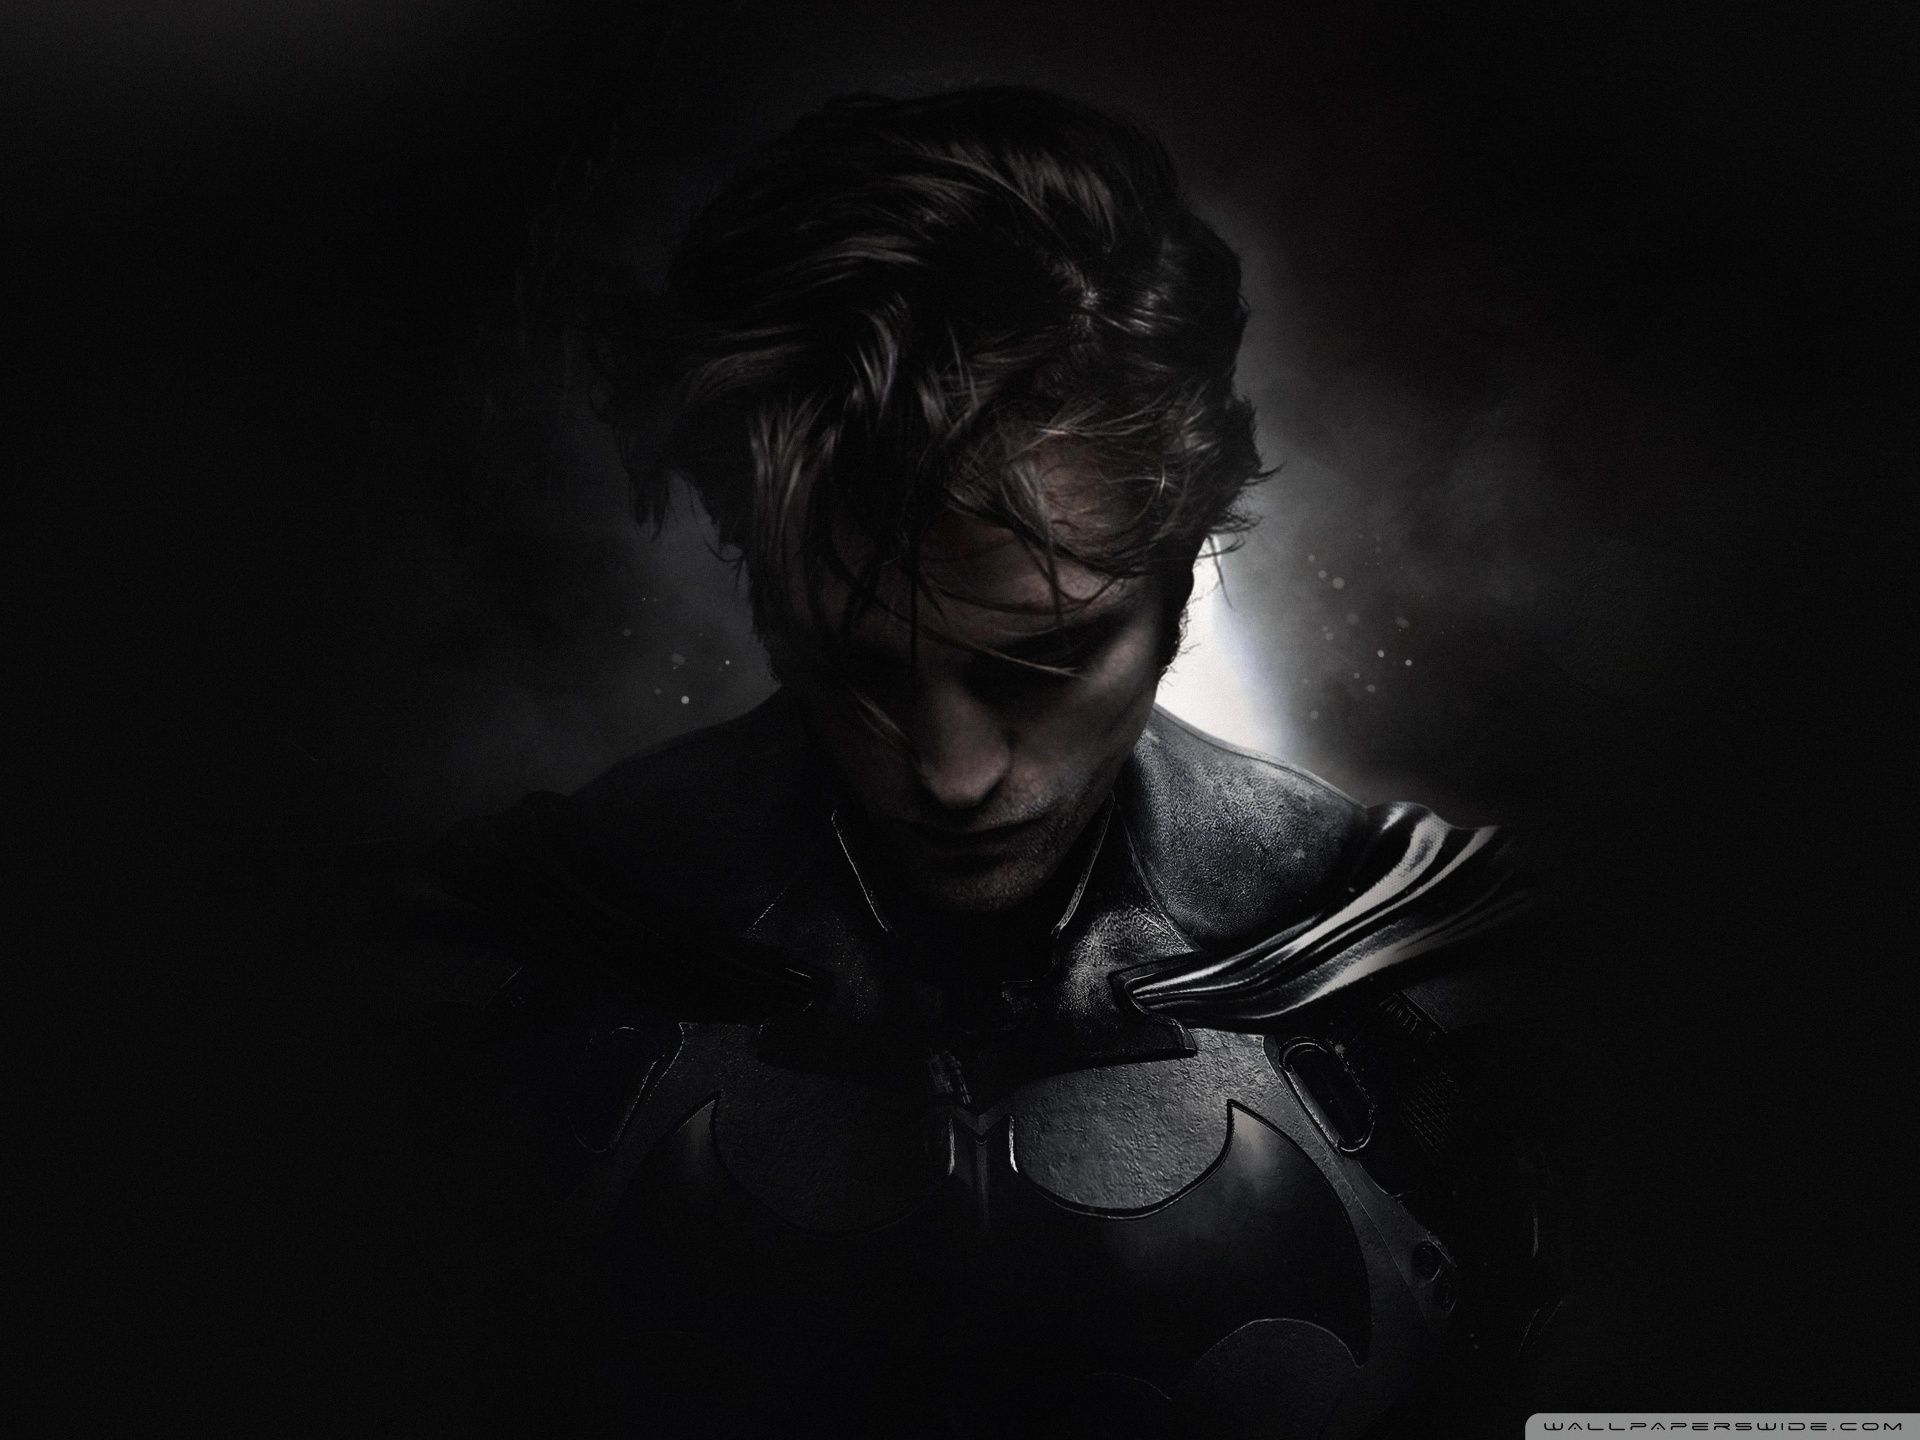 The Batman 2021 Robert Pattinson Ultra HD Desktop Background Wallpaper for 4K UHD TV, Widescreen & UltraWide Desktop & Laptop, Tablet